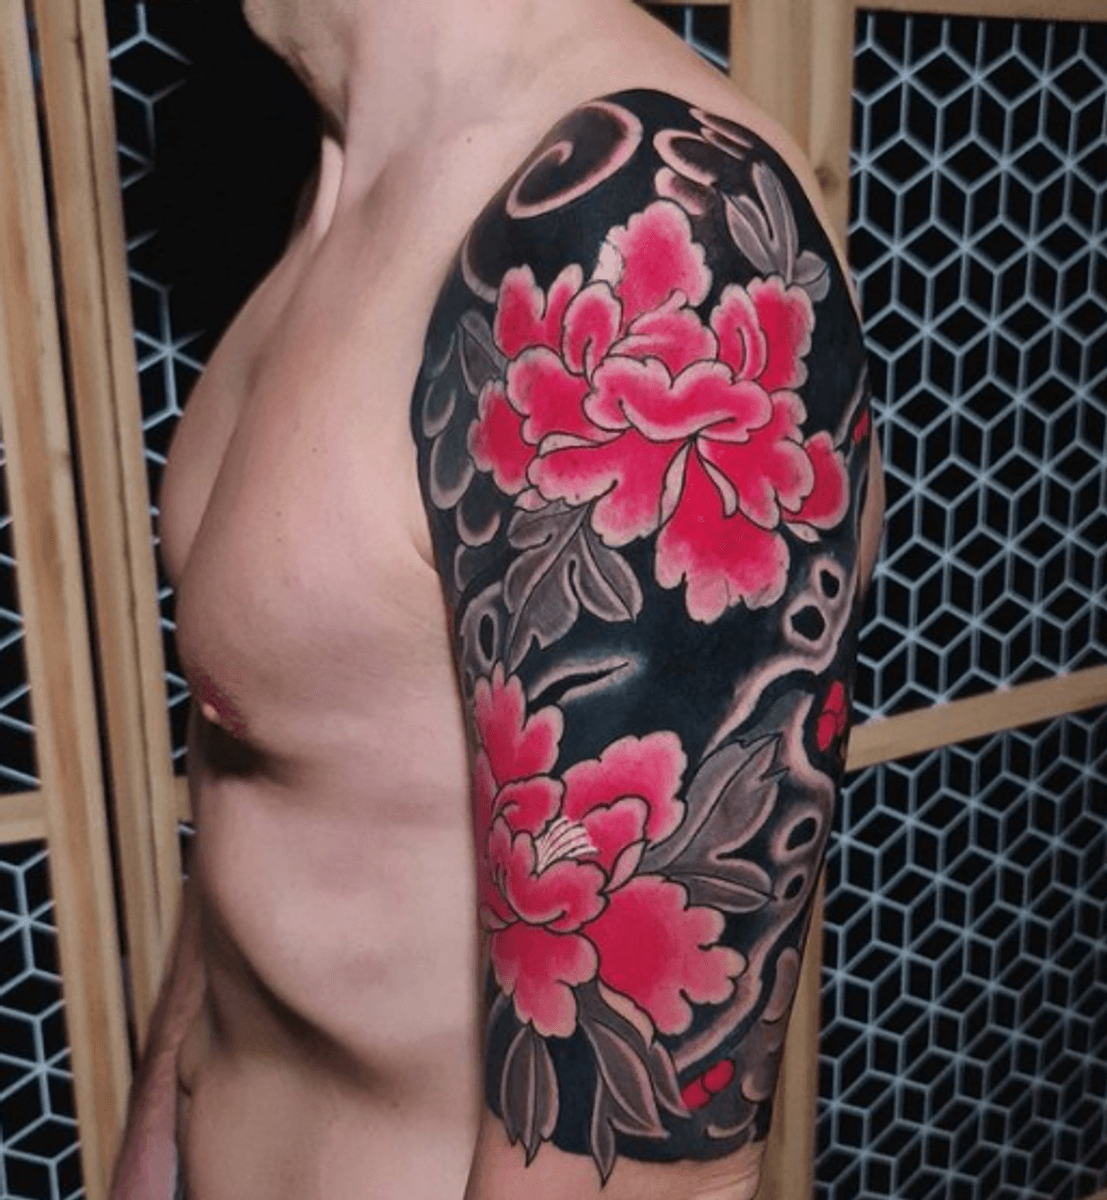 Tattoo uploaded by Kodomo Horidoushin • Tattoodo